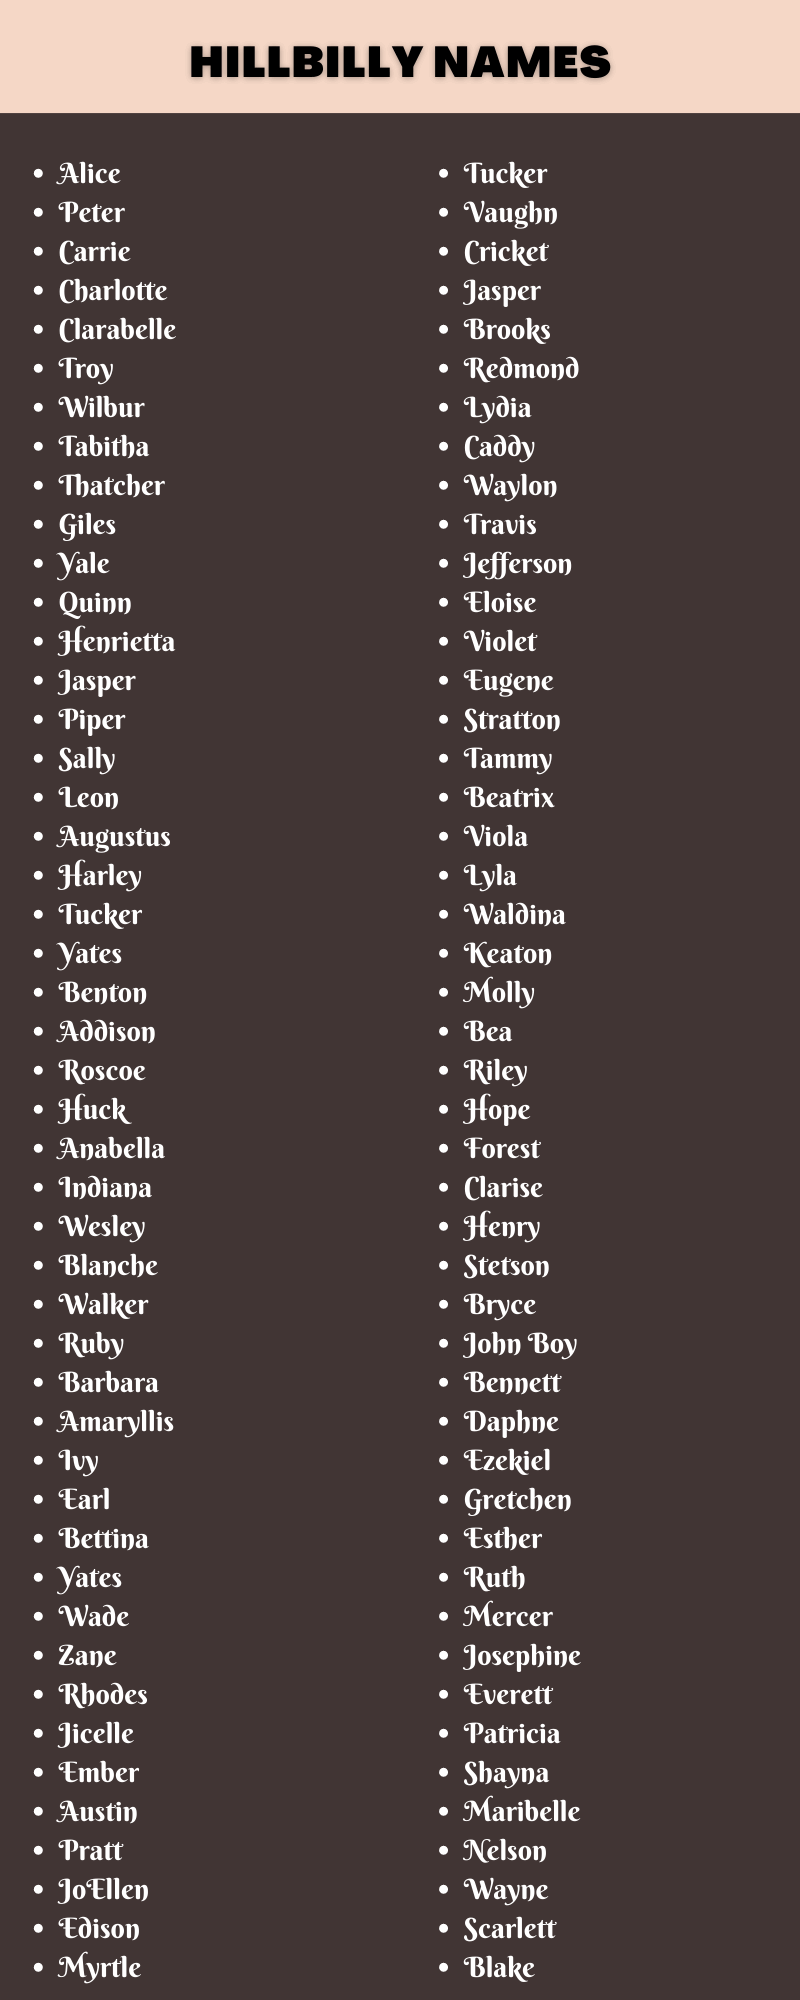 Hillbilly Names